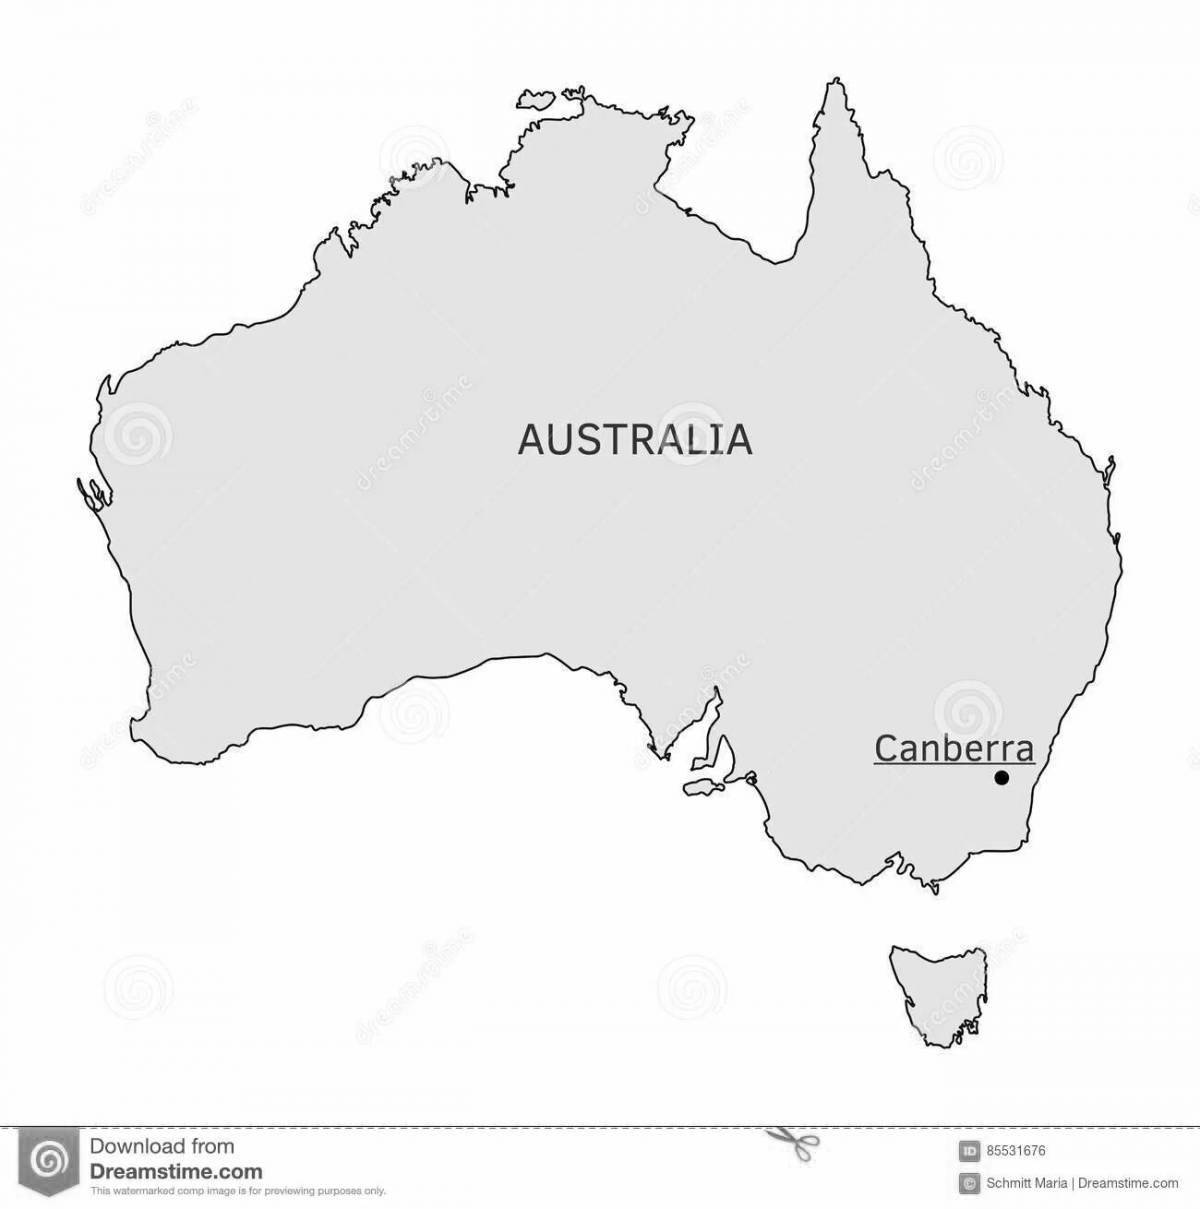 Раскраска уникальная карта австралии